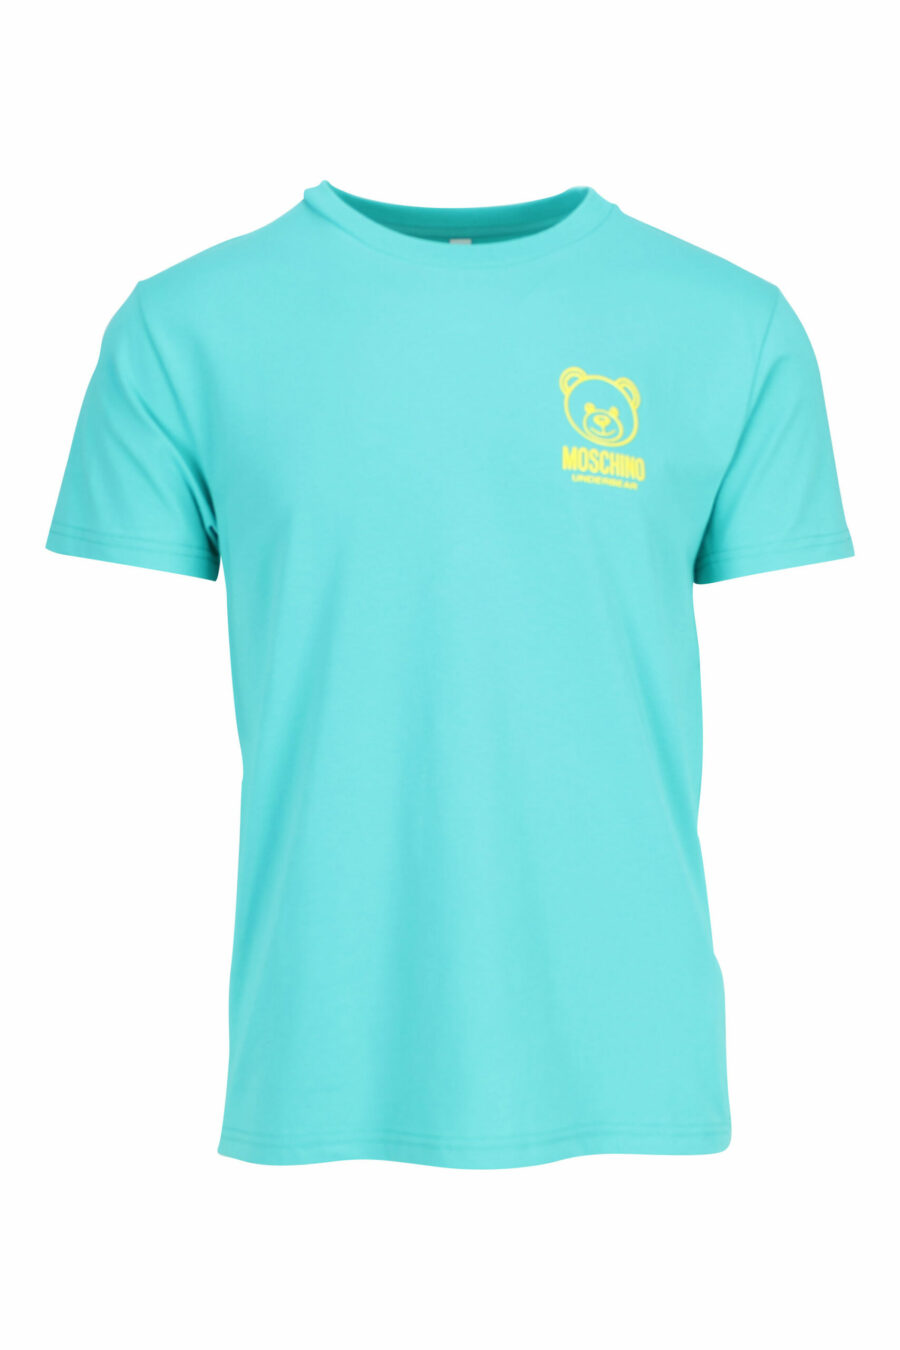 T-shirt vert menthe avec minilogo ours "underbear" en caoutchouc jaune - 667113602684 scaled